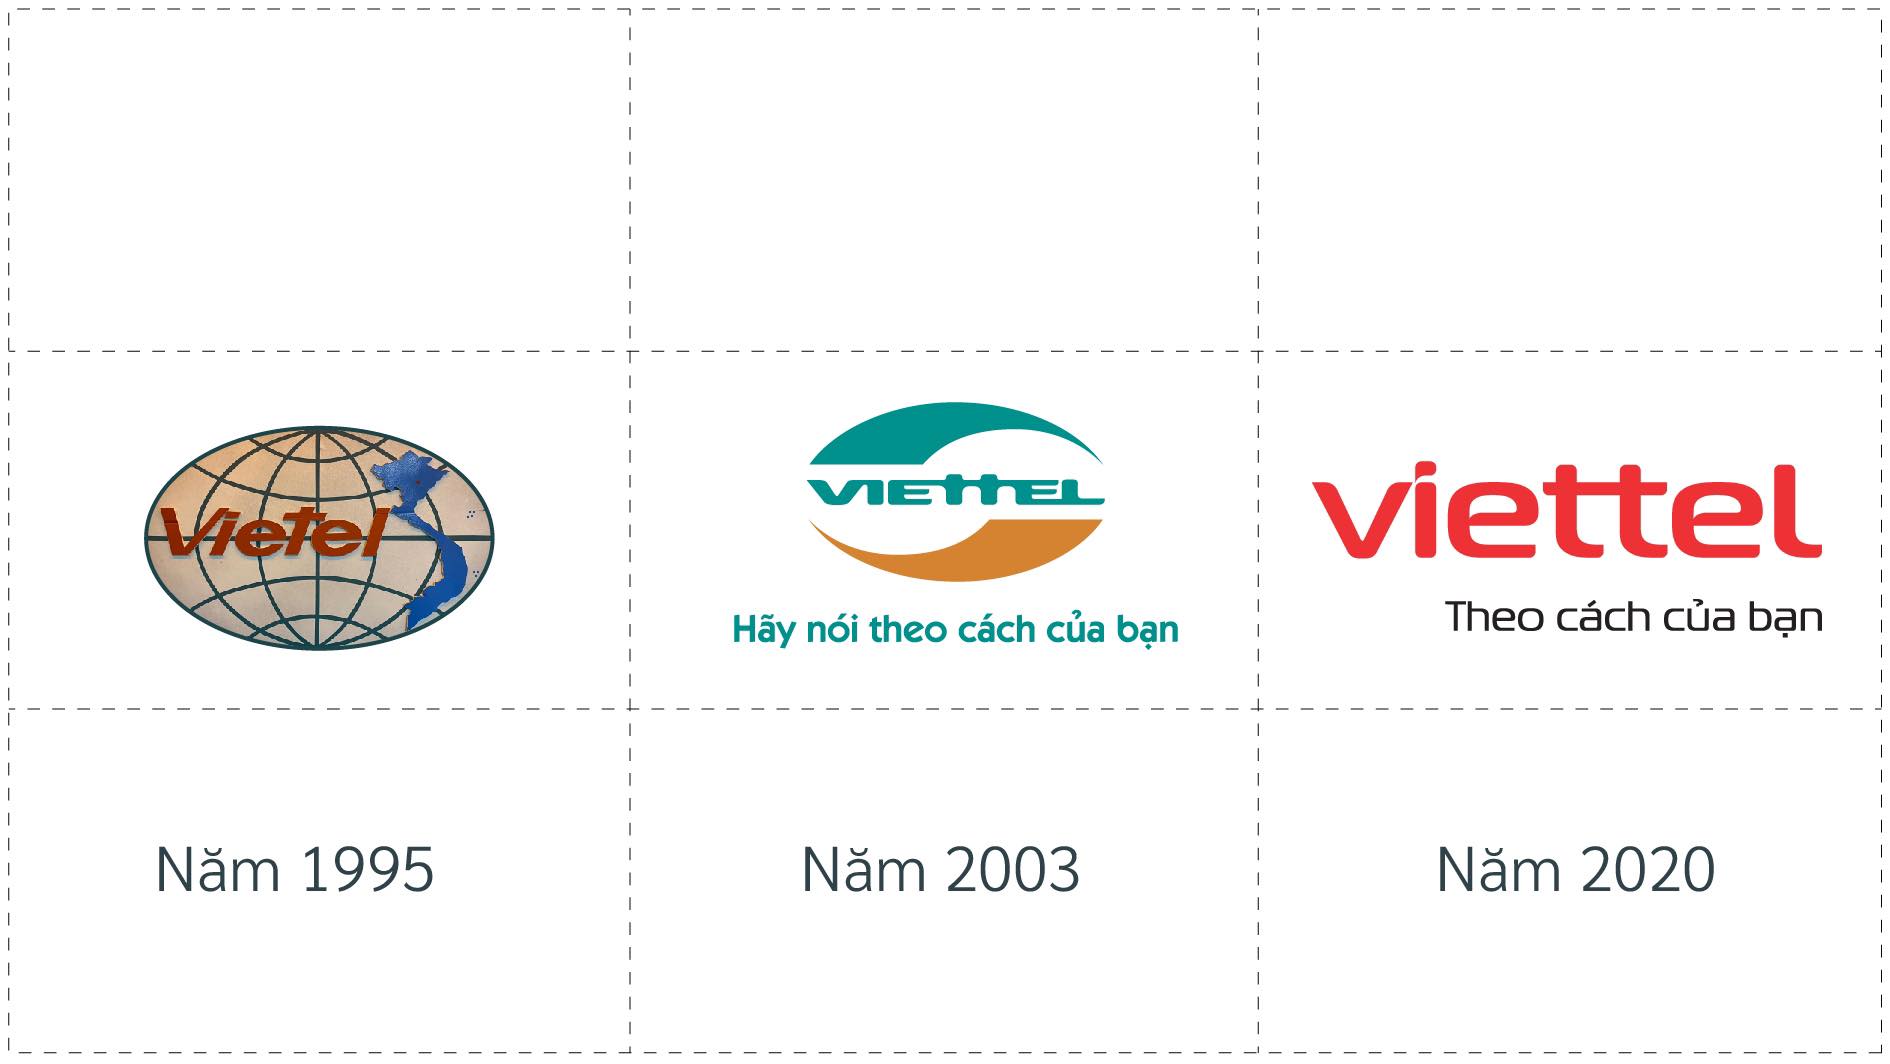 Logo và Slogan của Viettel từ lúc thành lập đến nay.